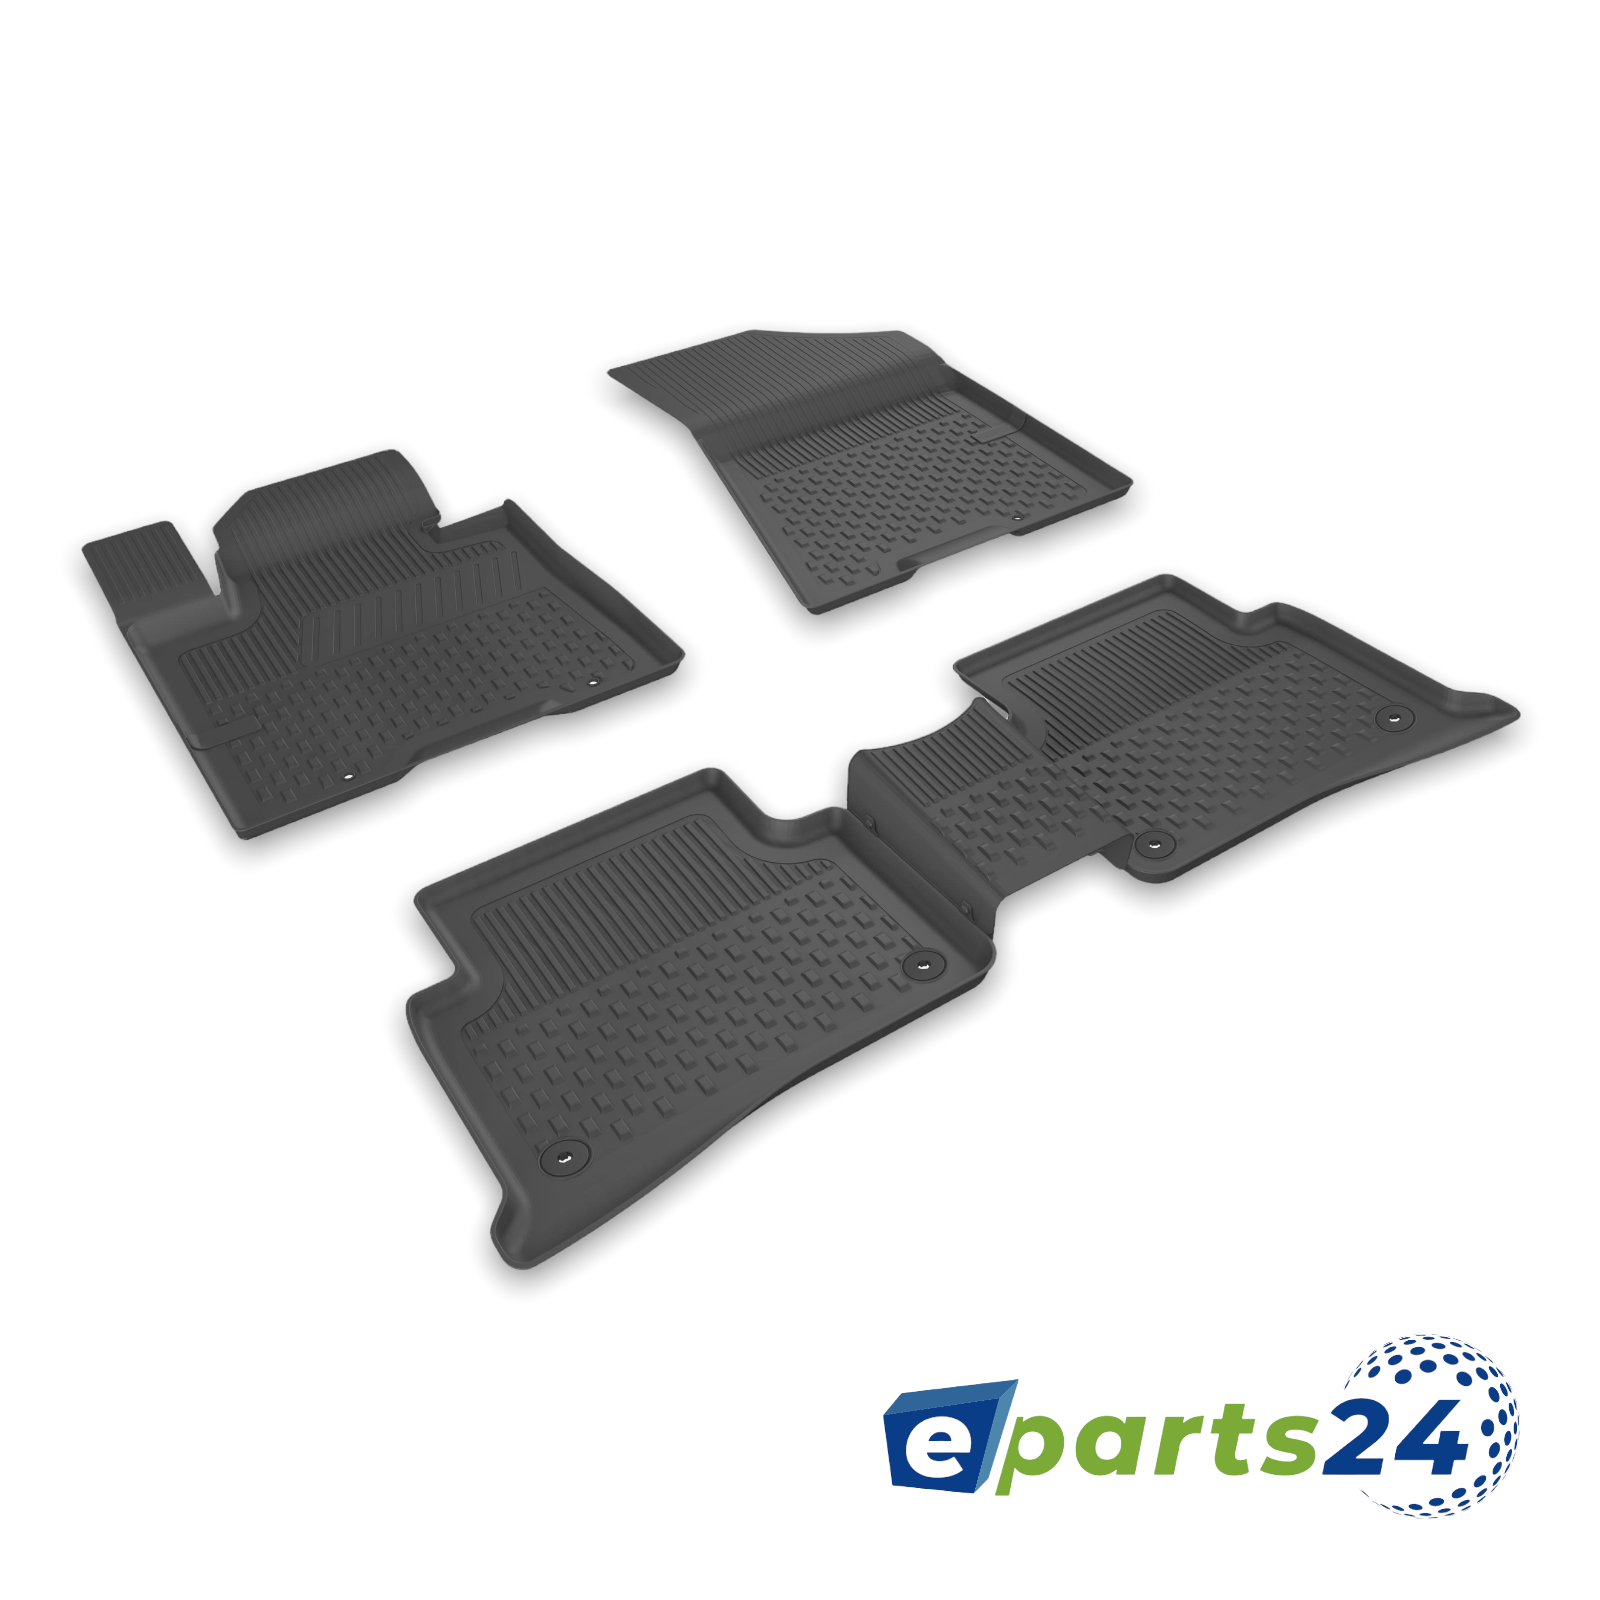 https://e-parts24.de/cdn/shop/products/kia-sportage-2016.png?v=1658831658